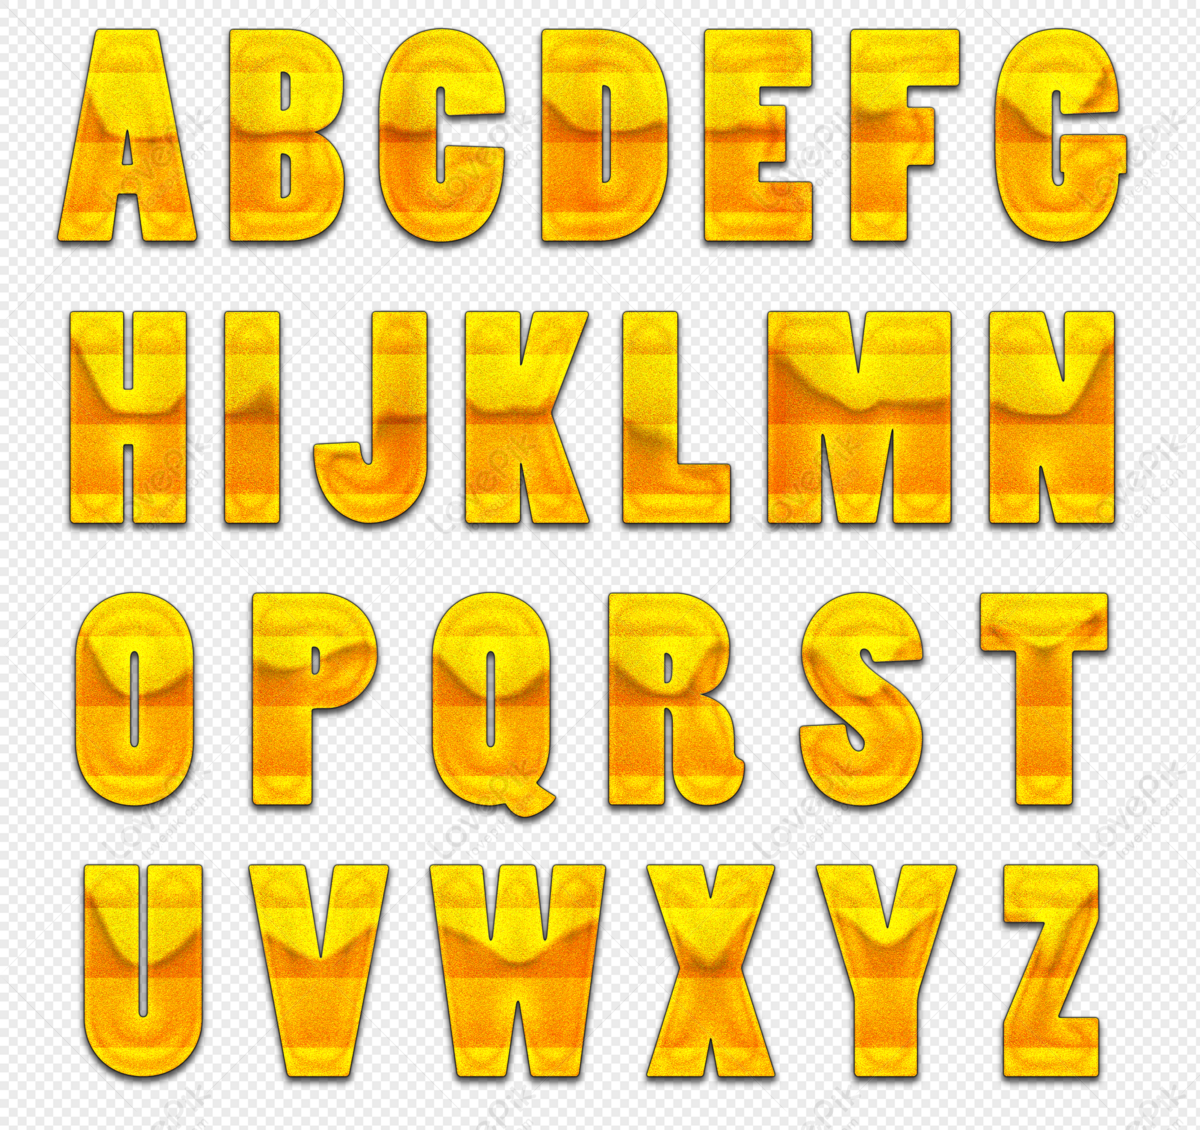 การออกแบบตัวอักษรภาษาอังกฤษสีทอง 26 Png สำหรับการดาวน์โหลดฟรี - Lovepik